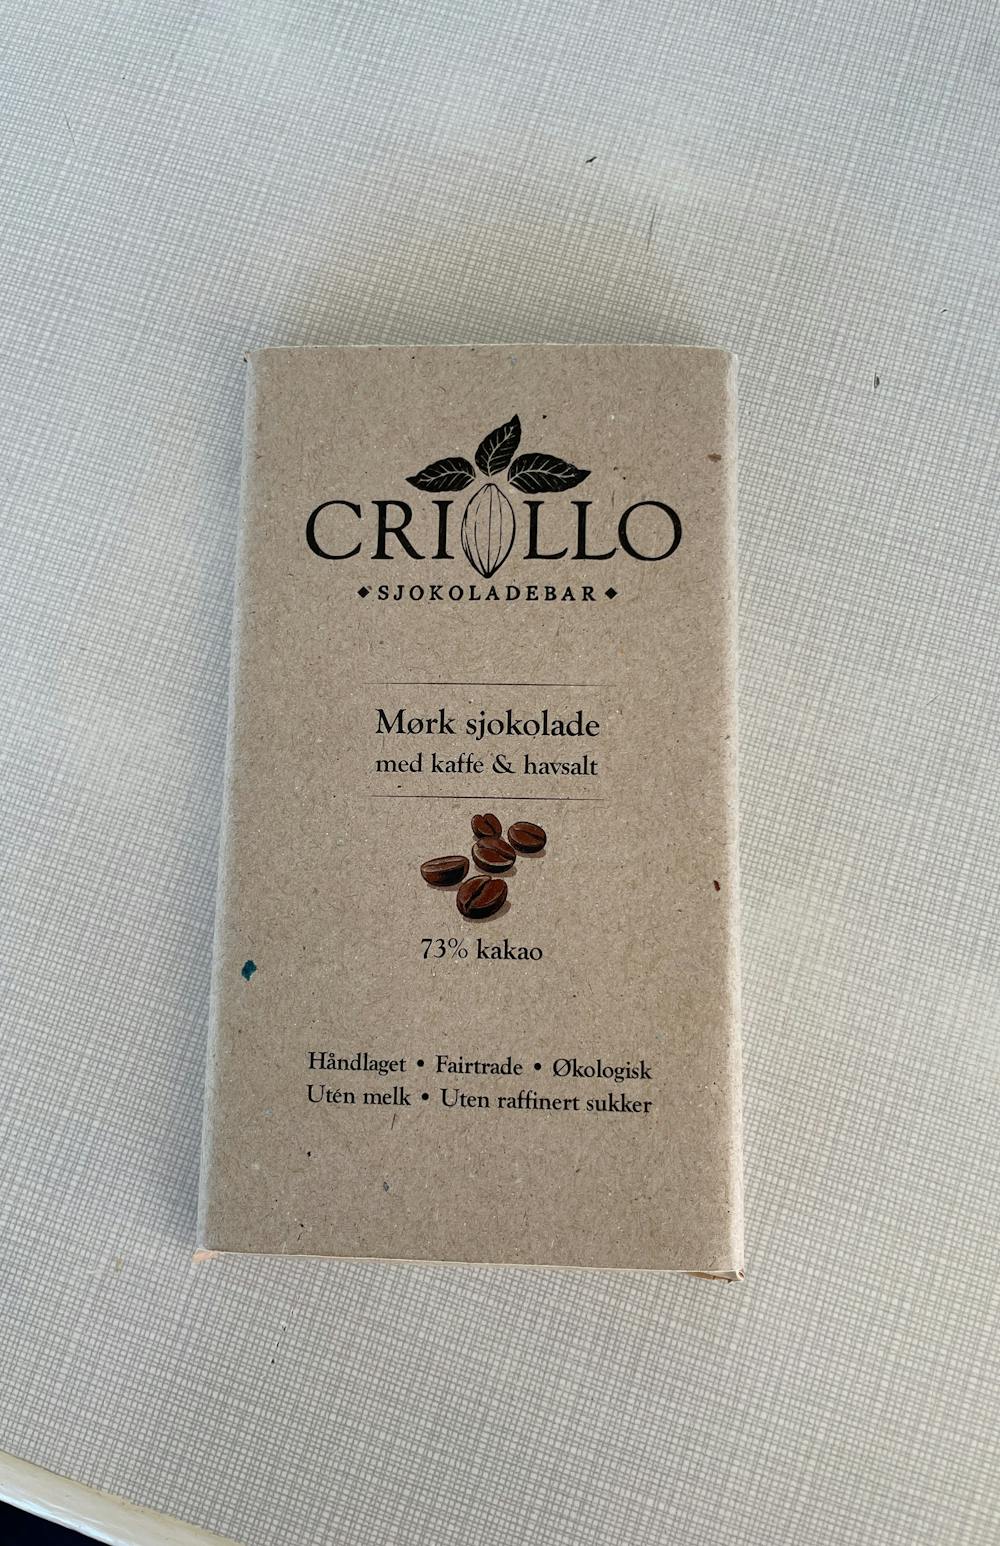 Mørk sjokolade med kaffe & havsalt, Crillo